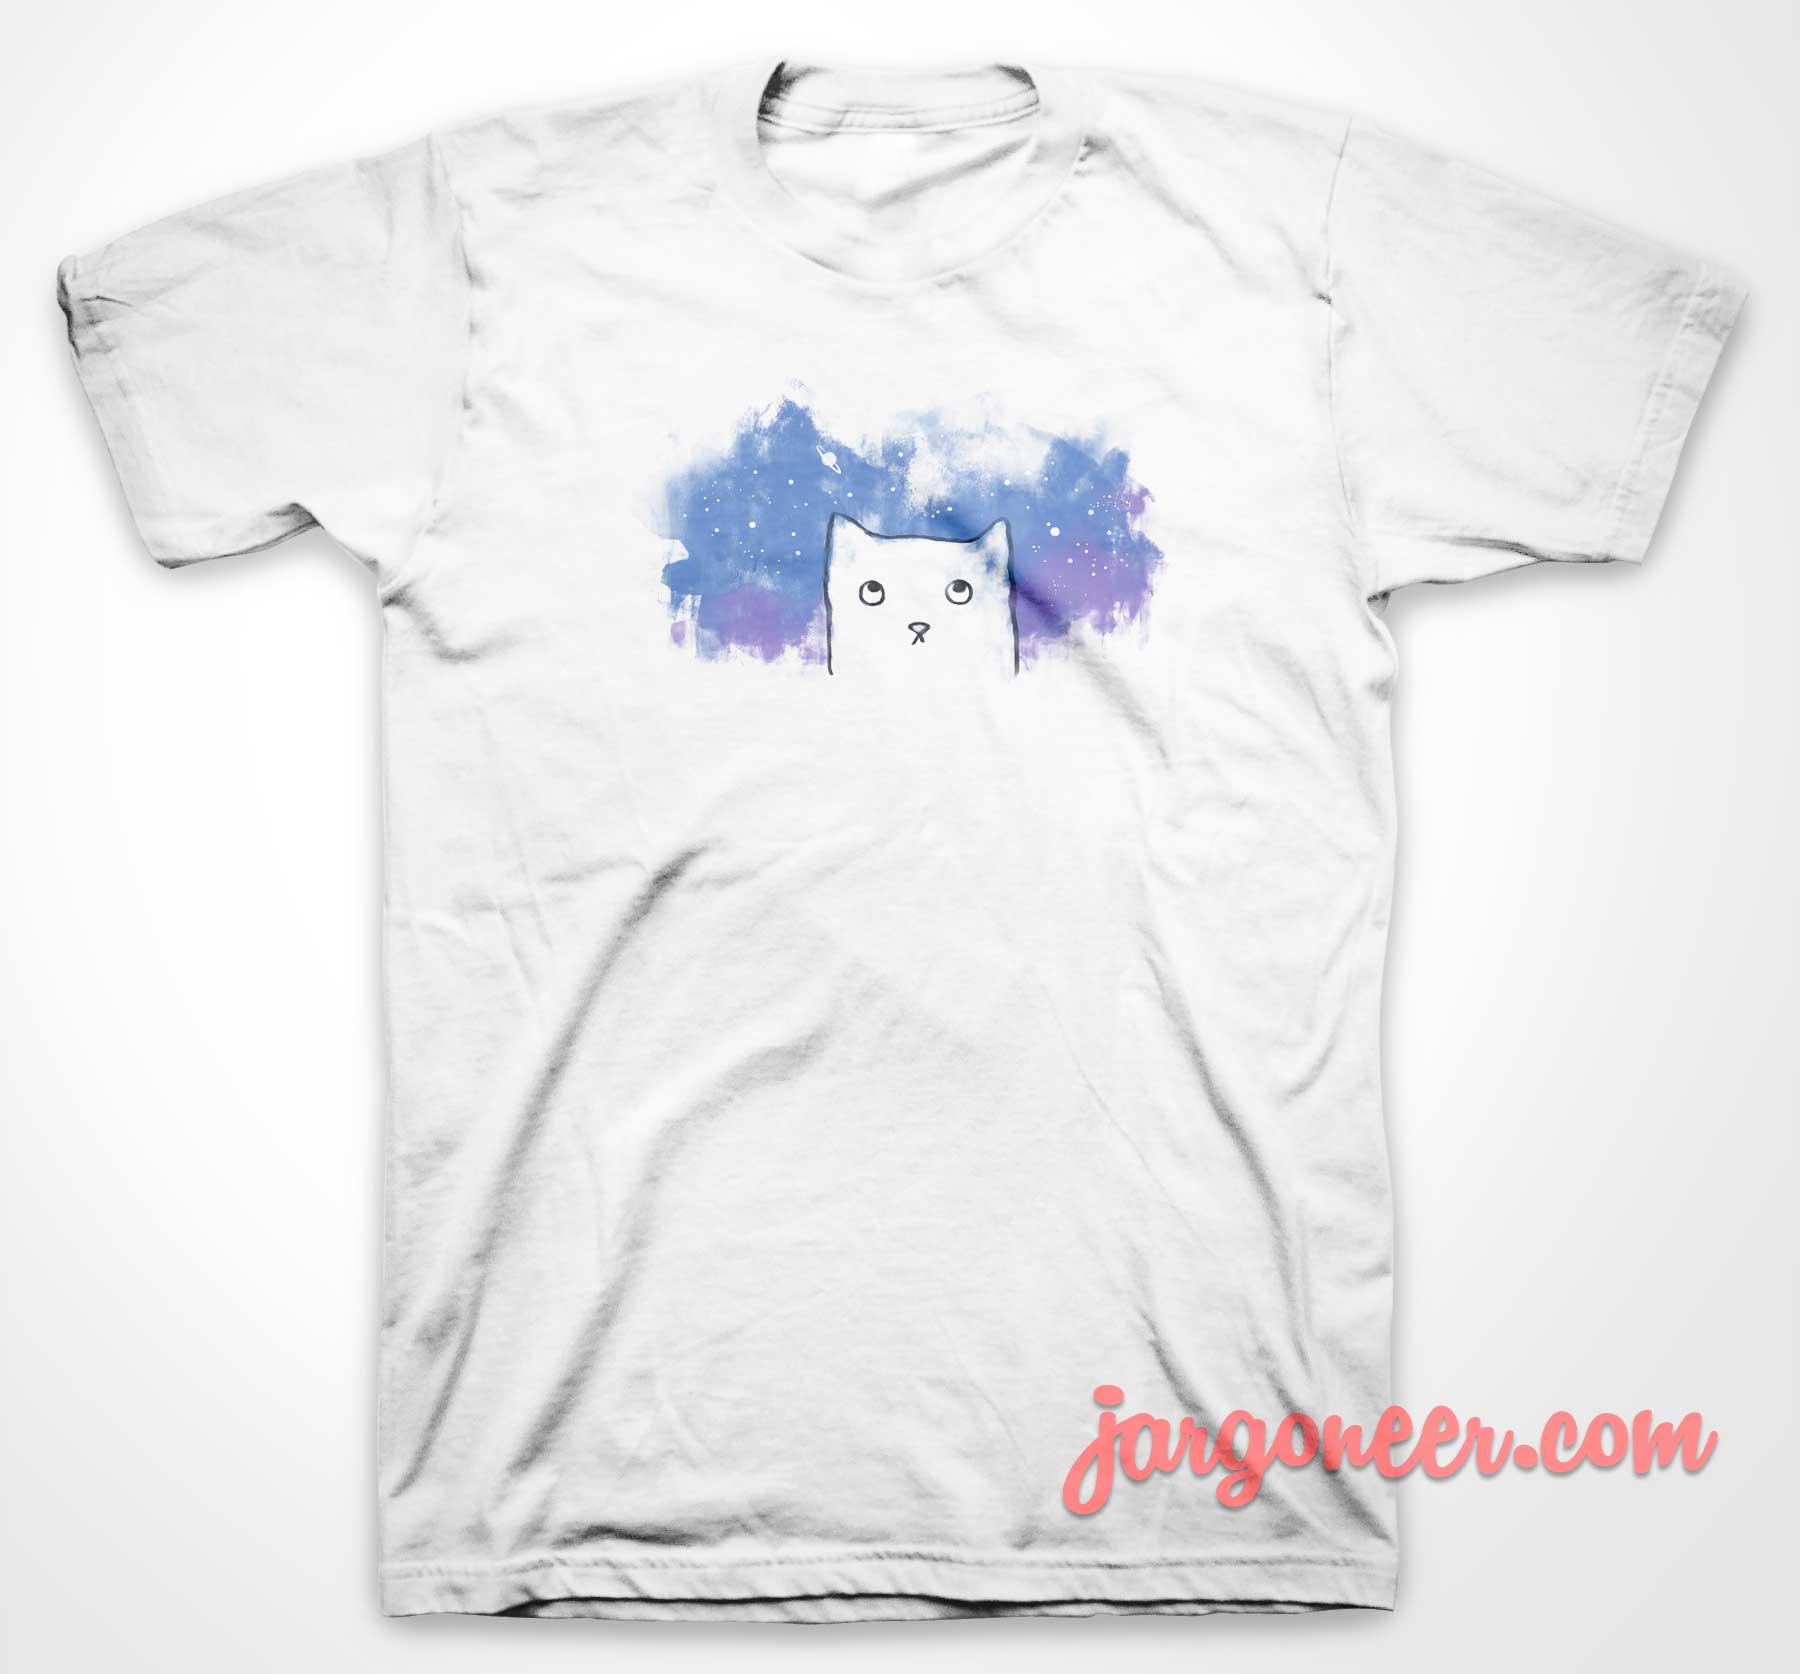 Space Cat 3 - Shop Unique Graphic Cool Shirt Designs